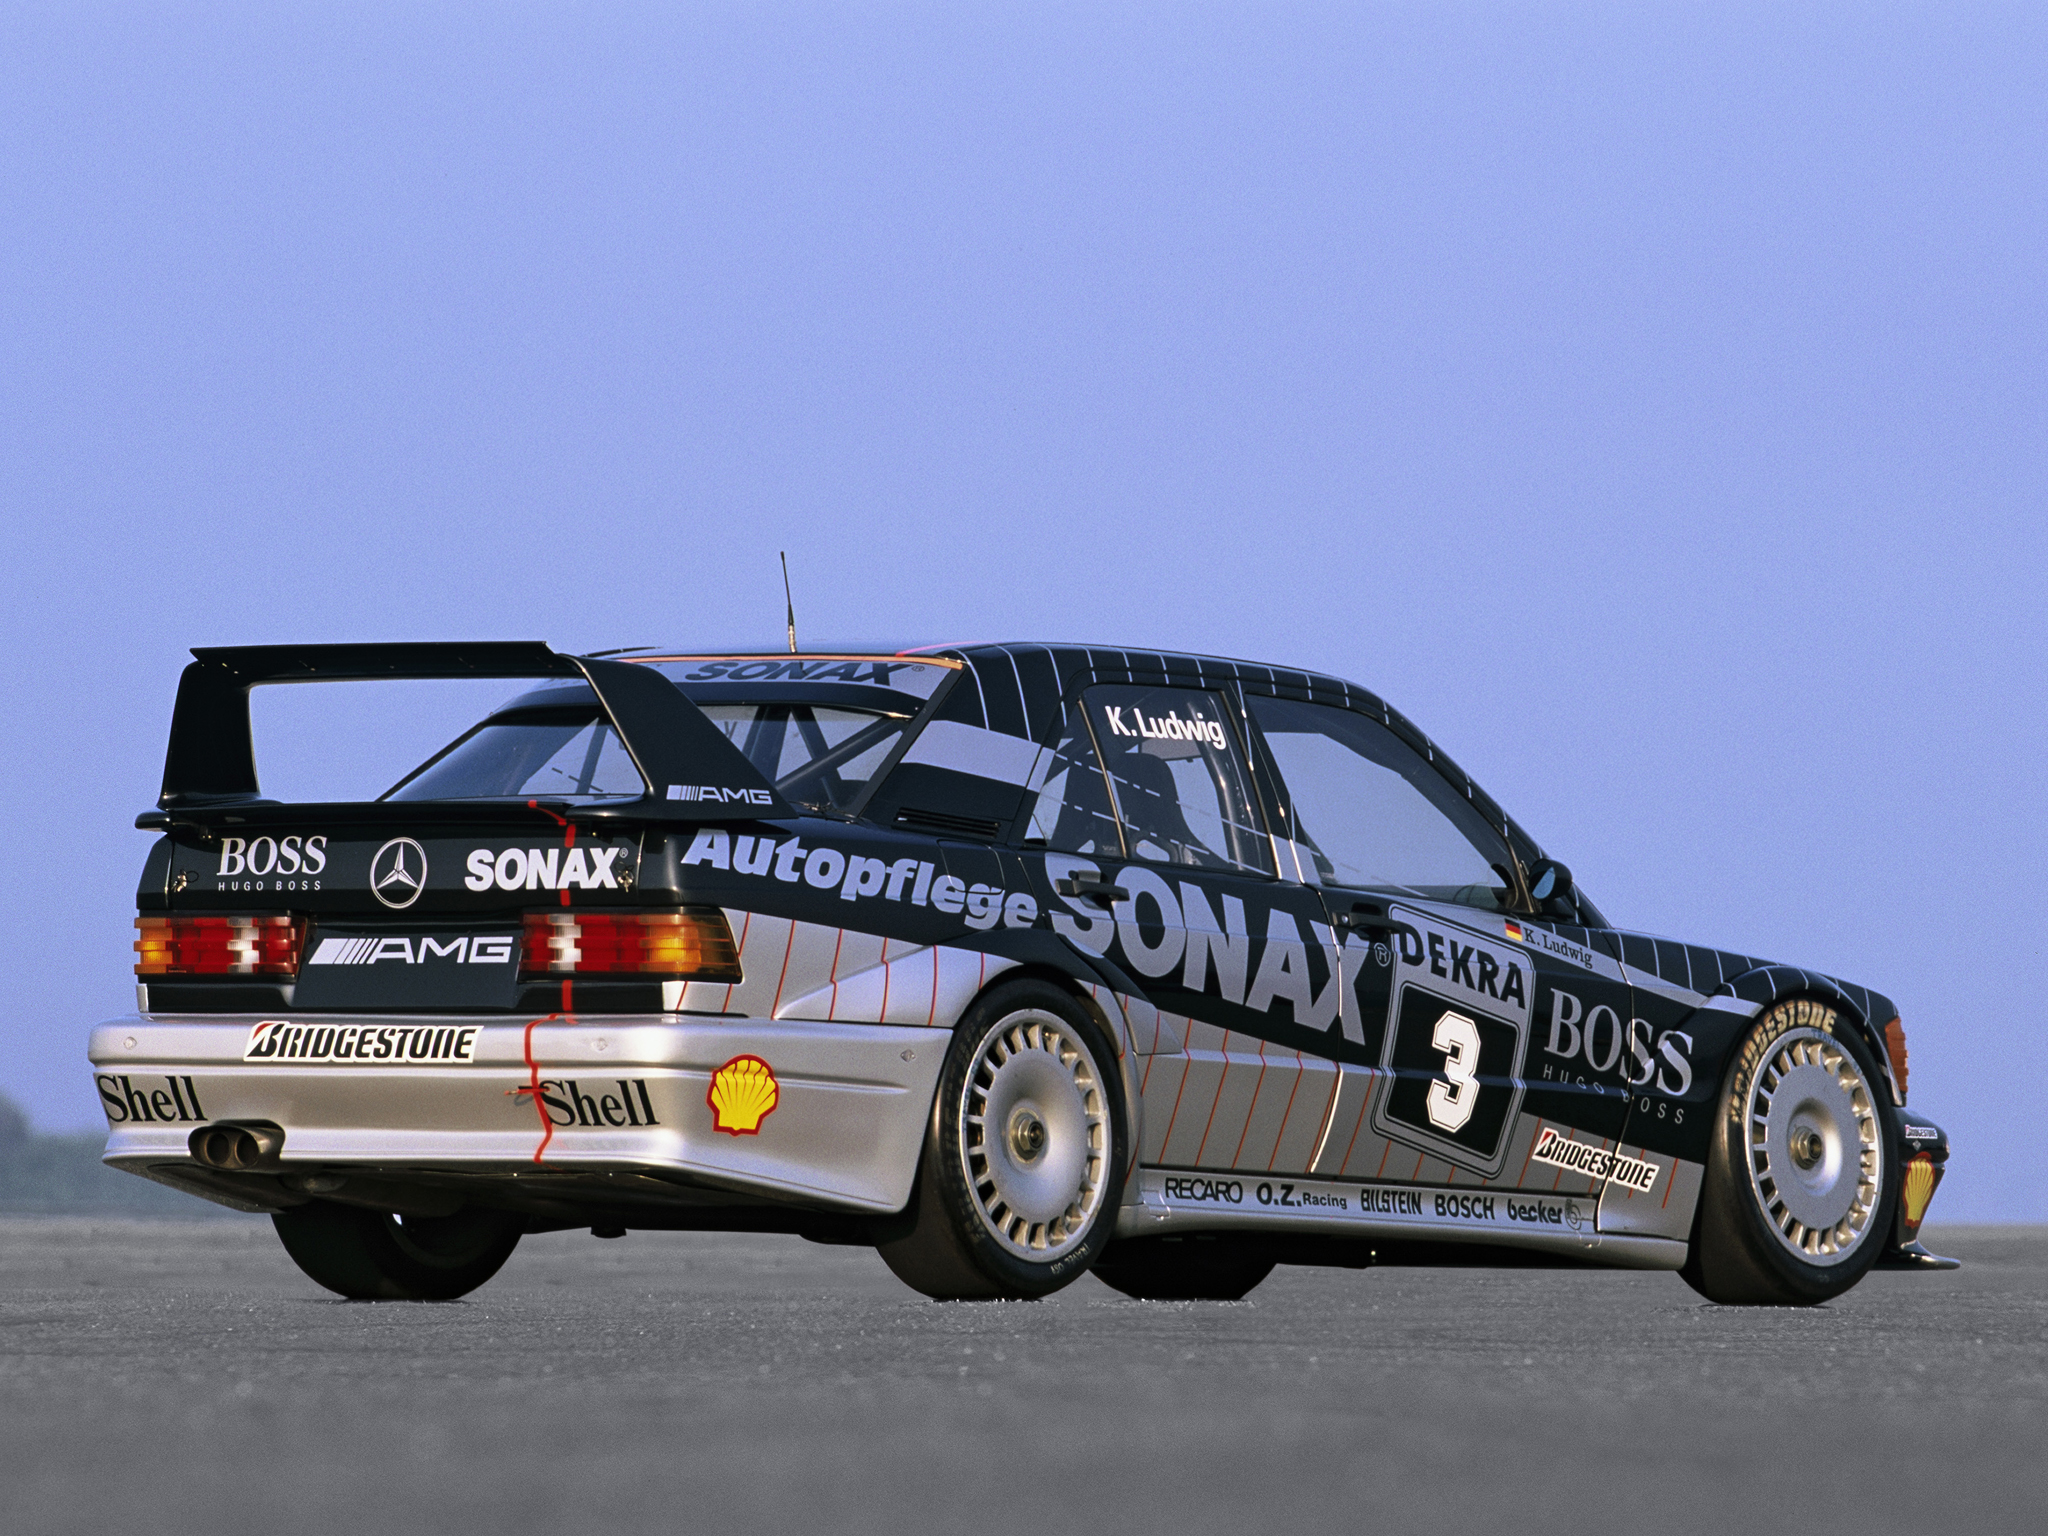 1991, Mercedes, Benz, Amg, 190, Evolution, I i, Dtm, W201, Race, Racing Wallpaper